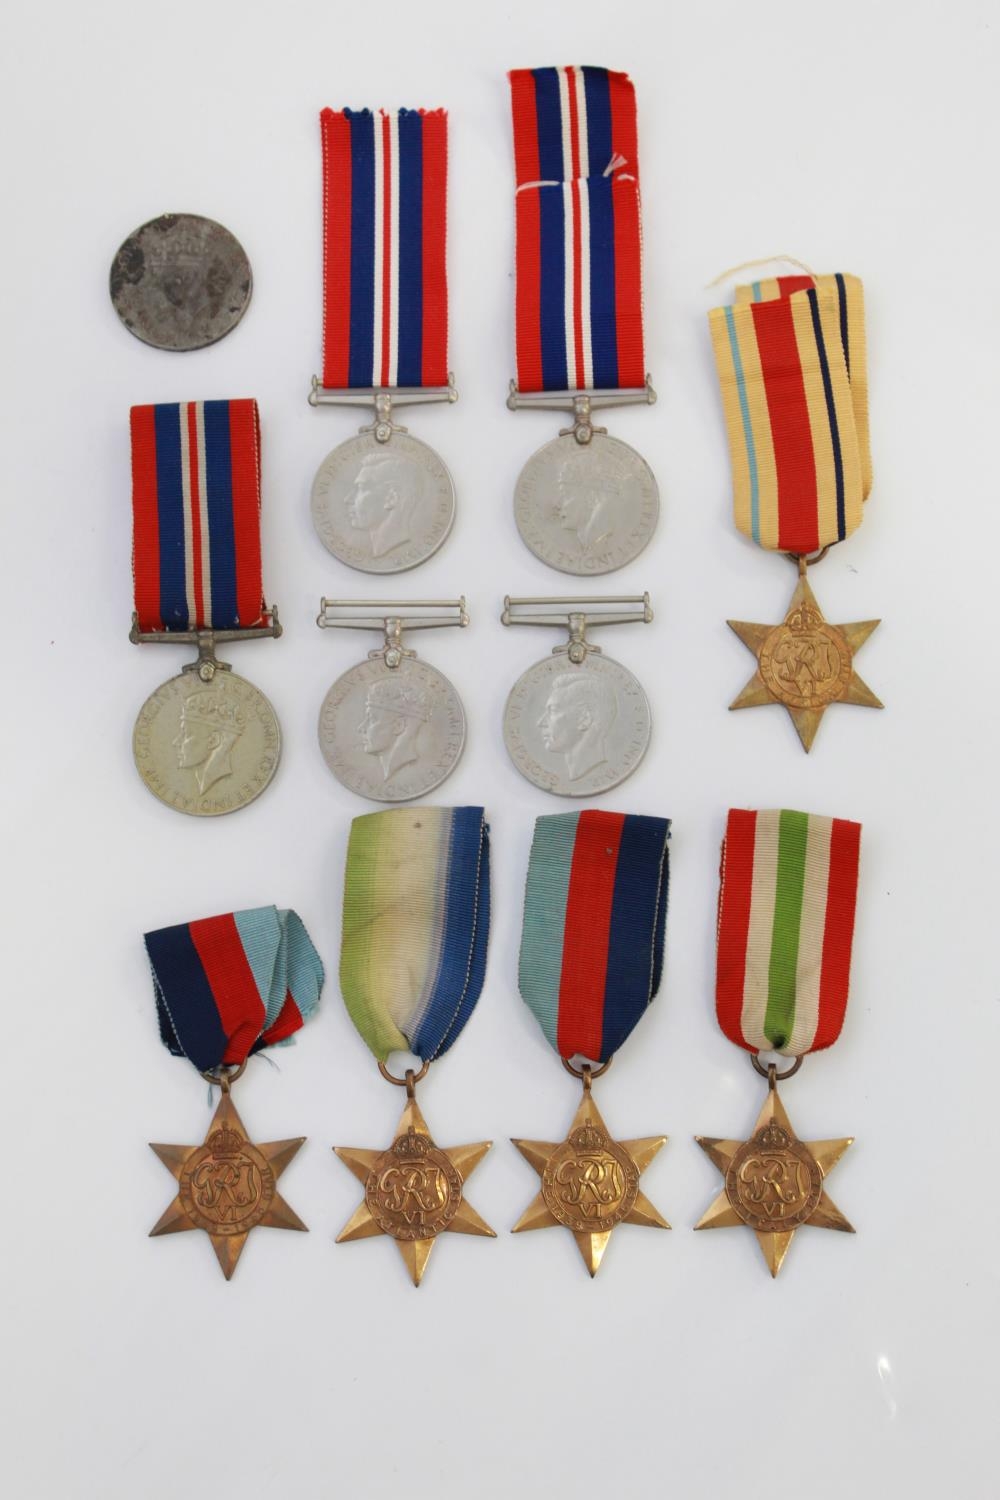 1939-49 Star(2) Atlantic Star. Italy Star. Africa Star. Defence Medal(2)War Medal 1939-45(4)